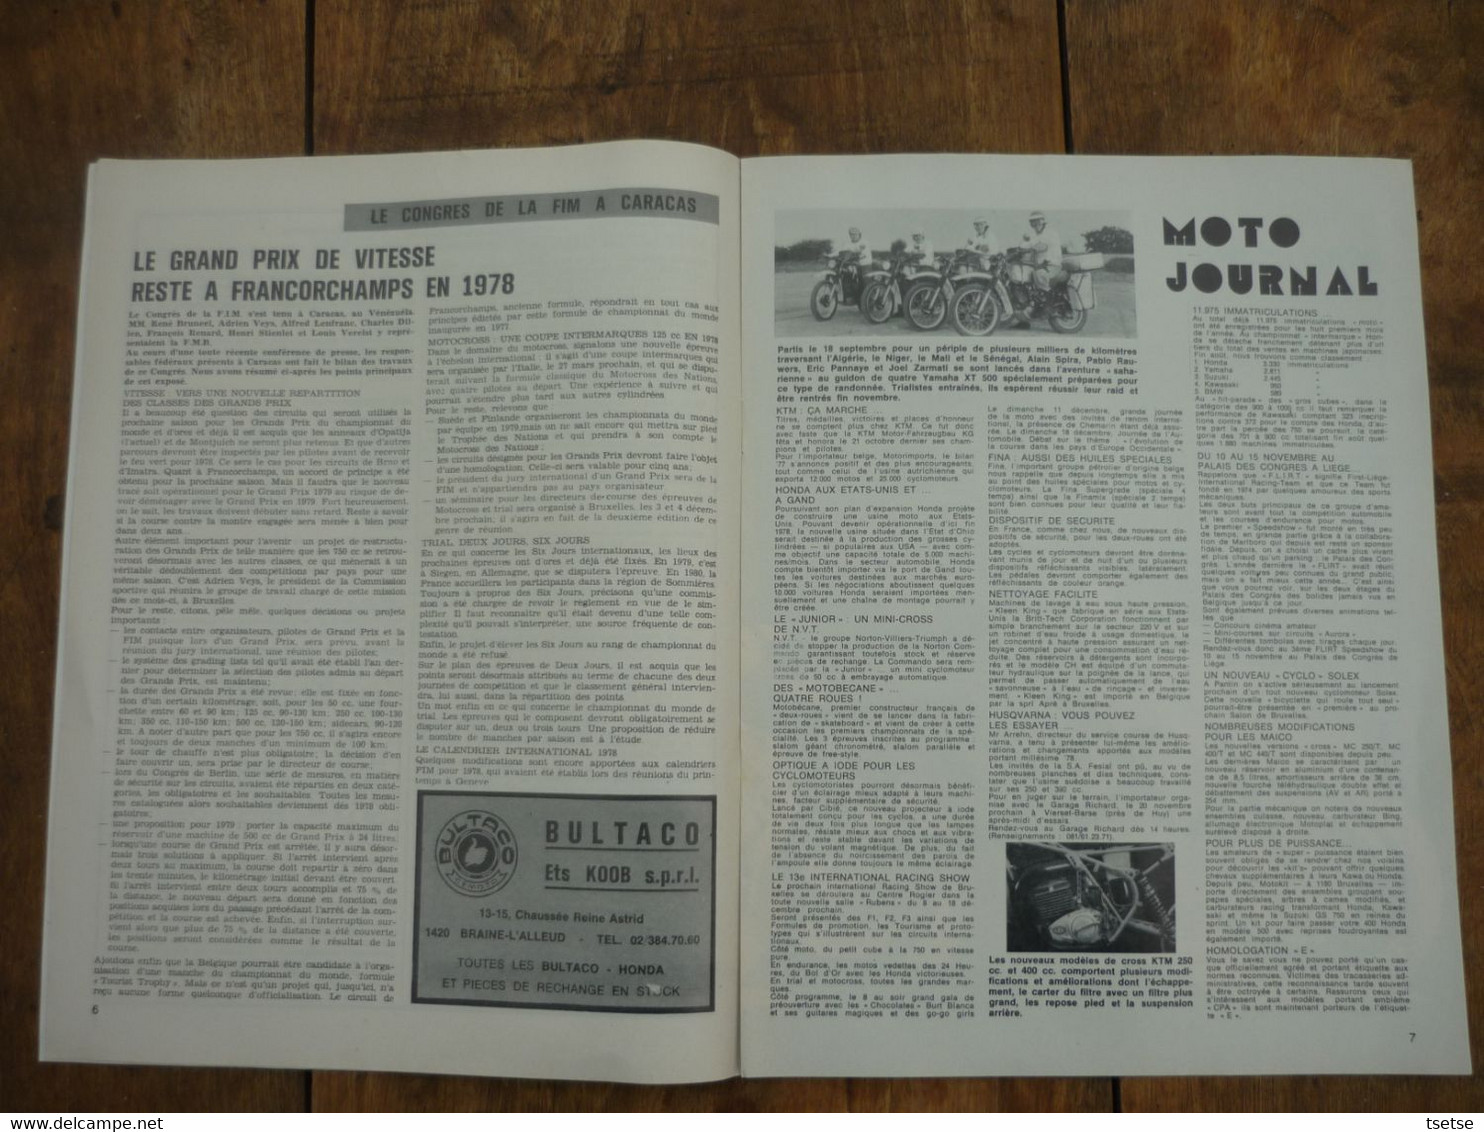 Revue Moto Magazine - N° 19 - 11 Novembre 1977 - Motorfietsen